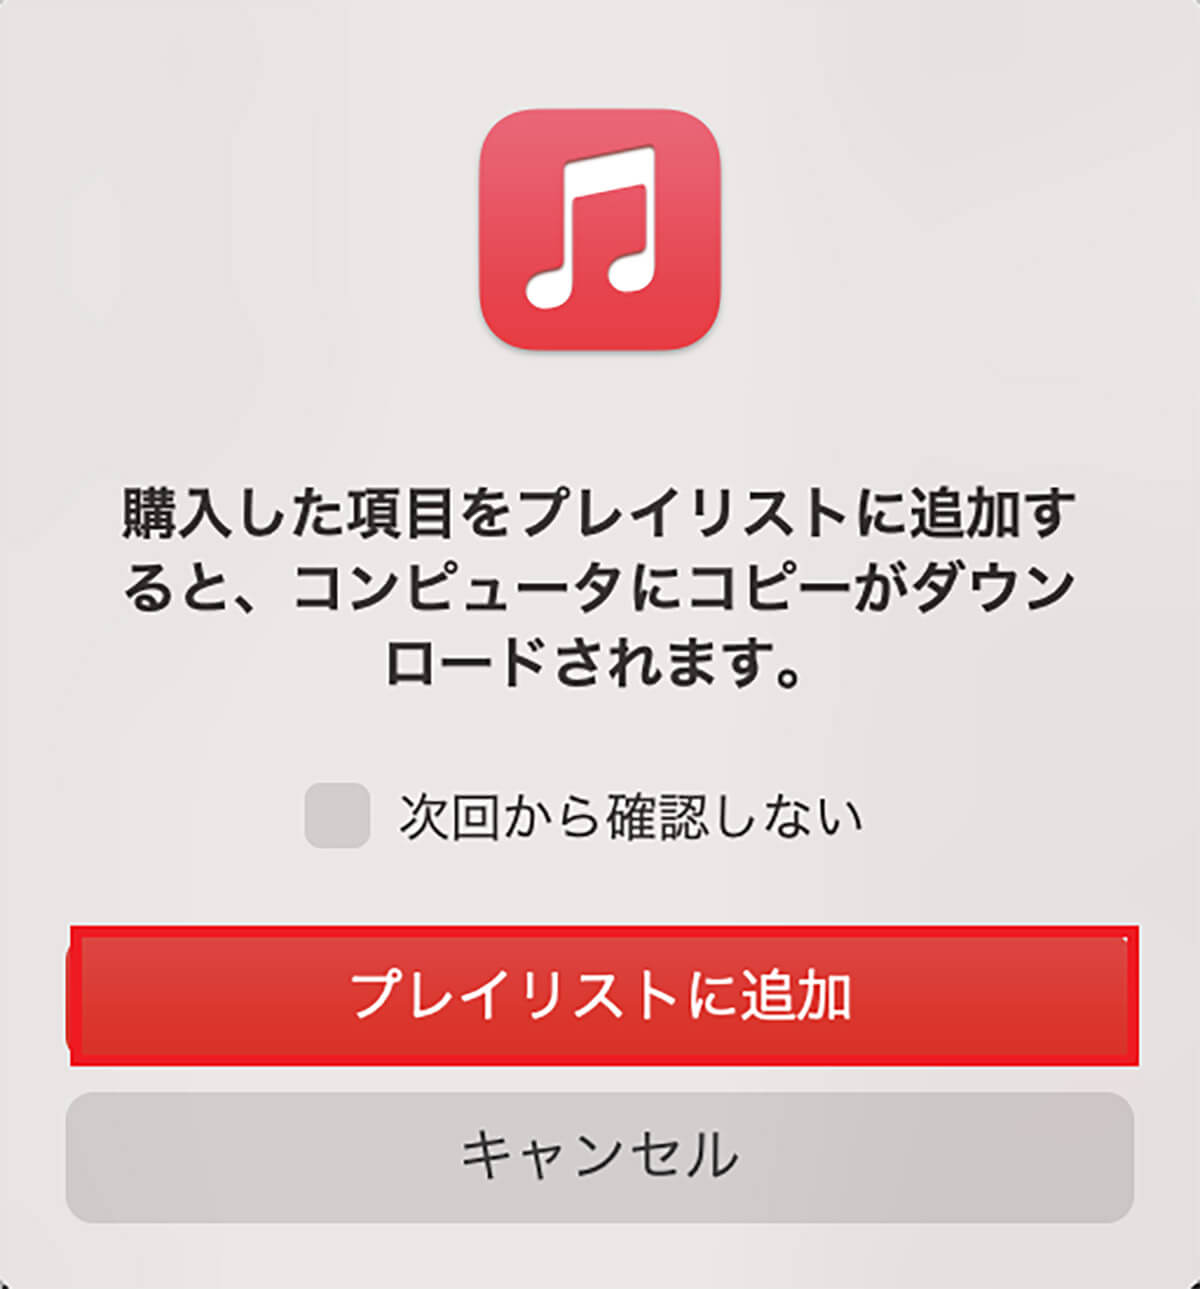 【手順①】Macの「ミュージック」アプリケーションでプレイリストを作成12